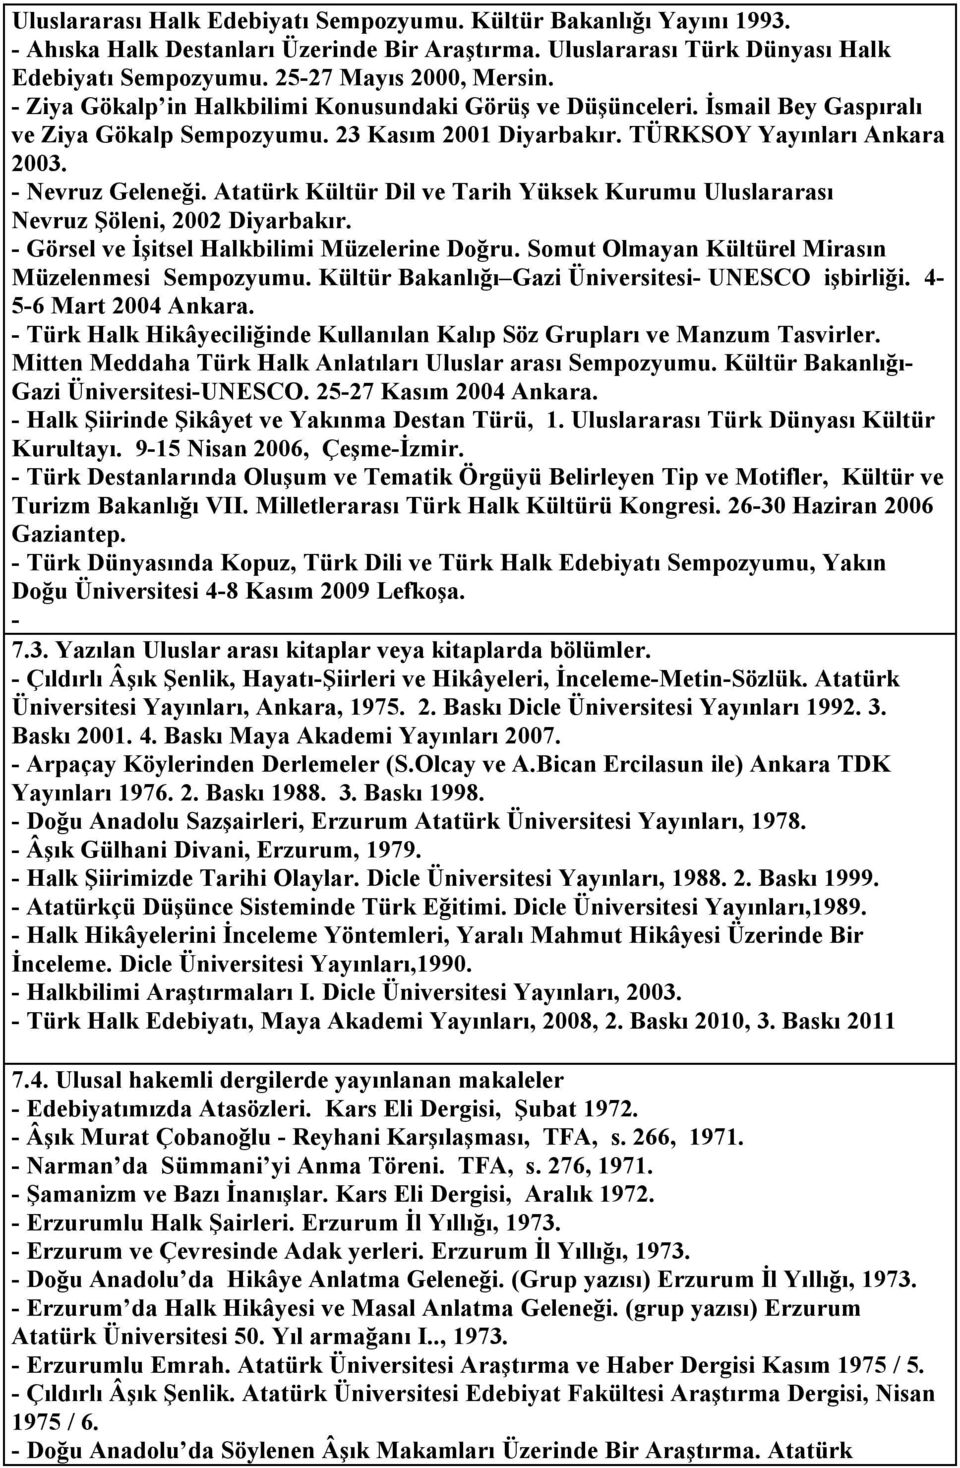 Atatürk Kültür Dil ve Tarih Yüksek Kurumu Uluslararası Nevruz Şöleni, 2002 Diyarbakır. Görsel ve İşitsel Halkbilimi Müzelerine Doğru. Somut Olmayan Kültürel Mirasın Müzelenmesi Sempozyumu.